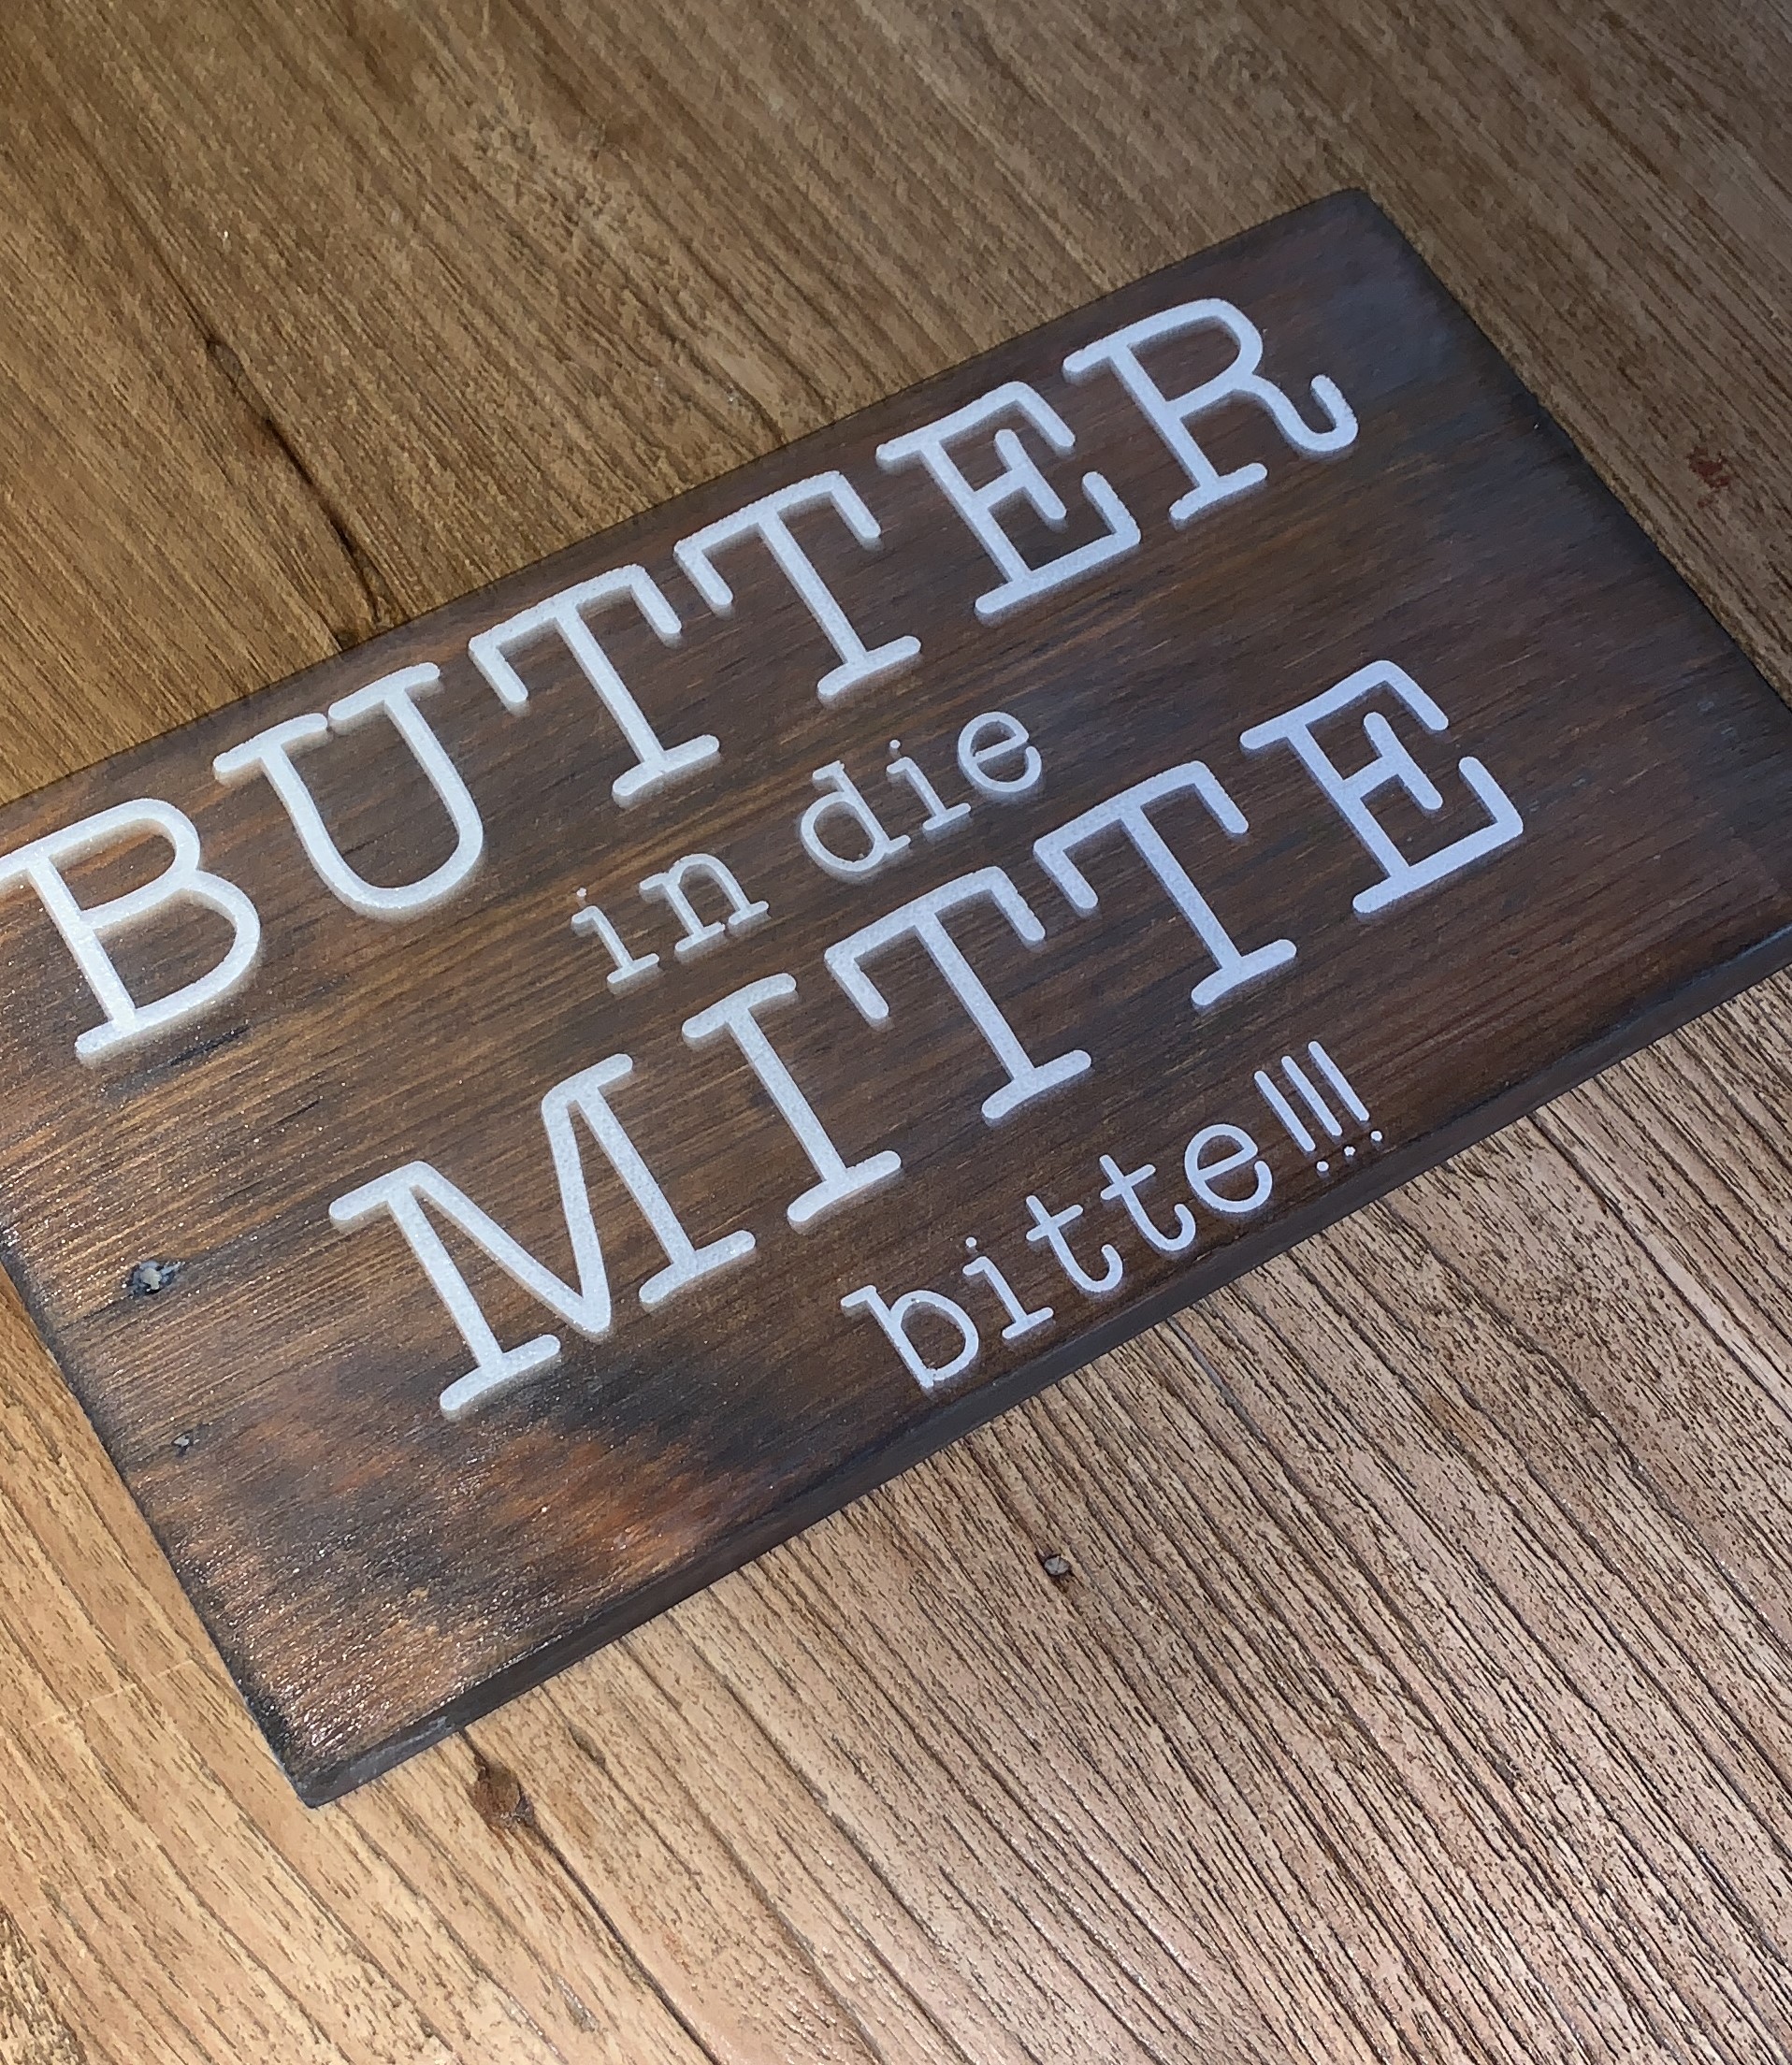 Butter.....